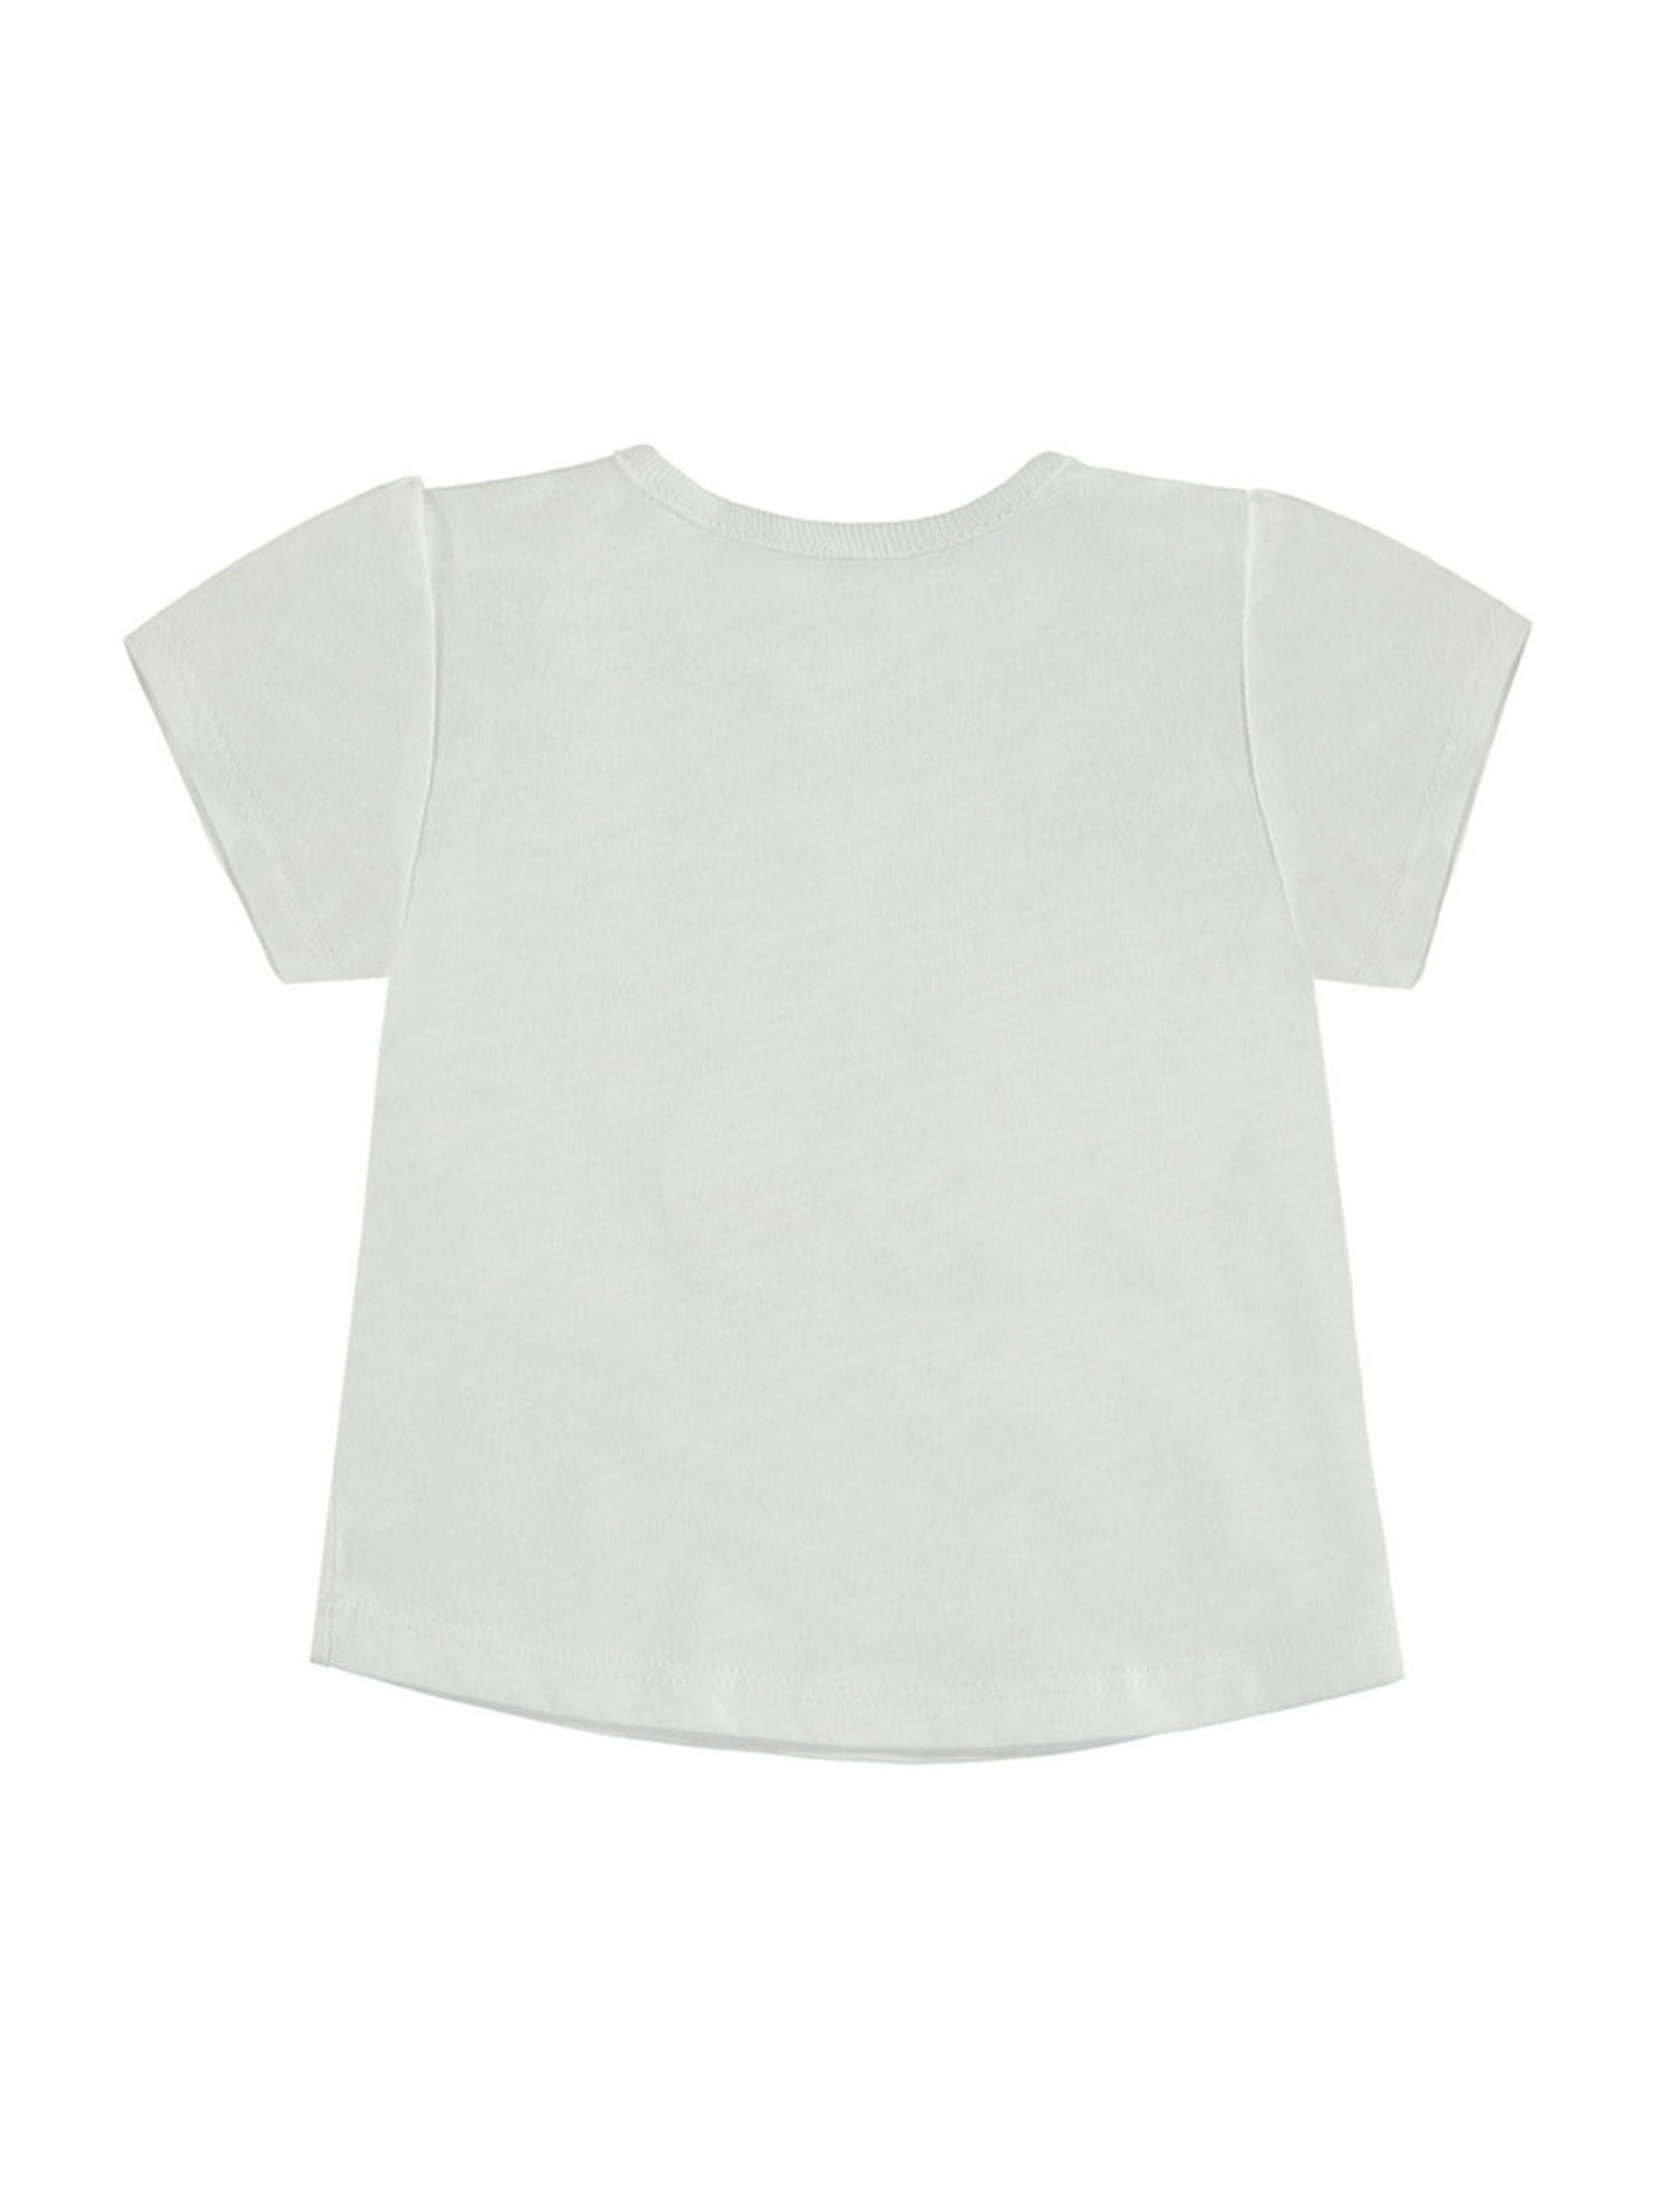 Dziecięca bluzka z krótkim rękawem biała